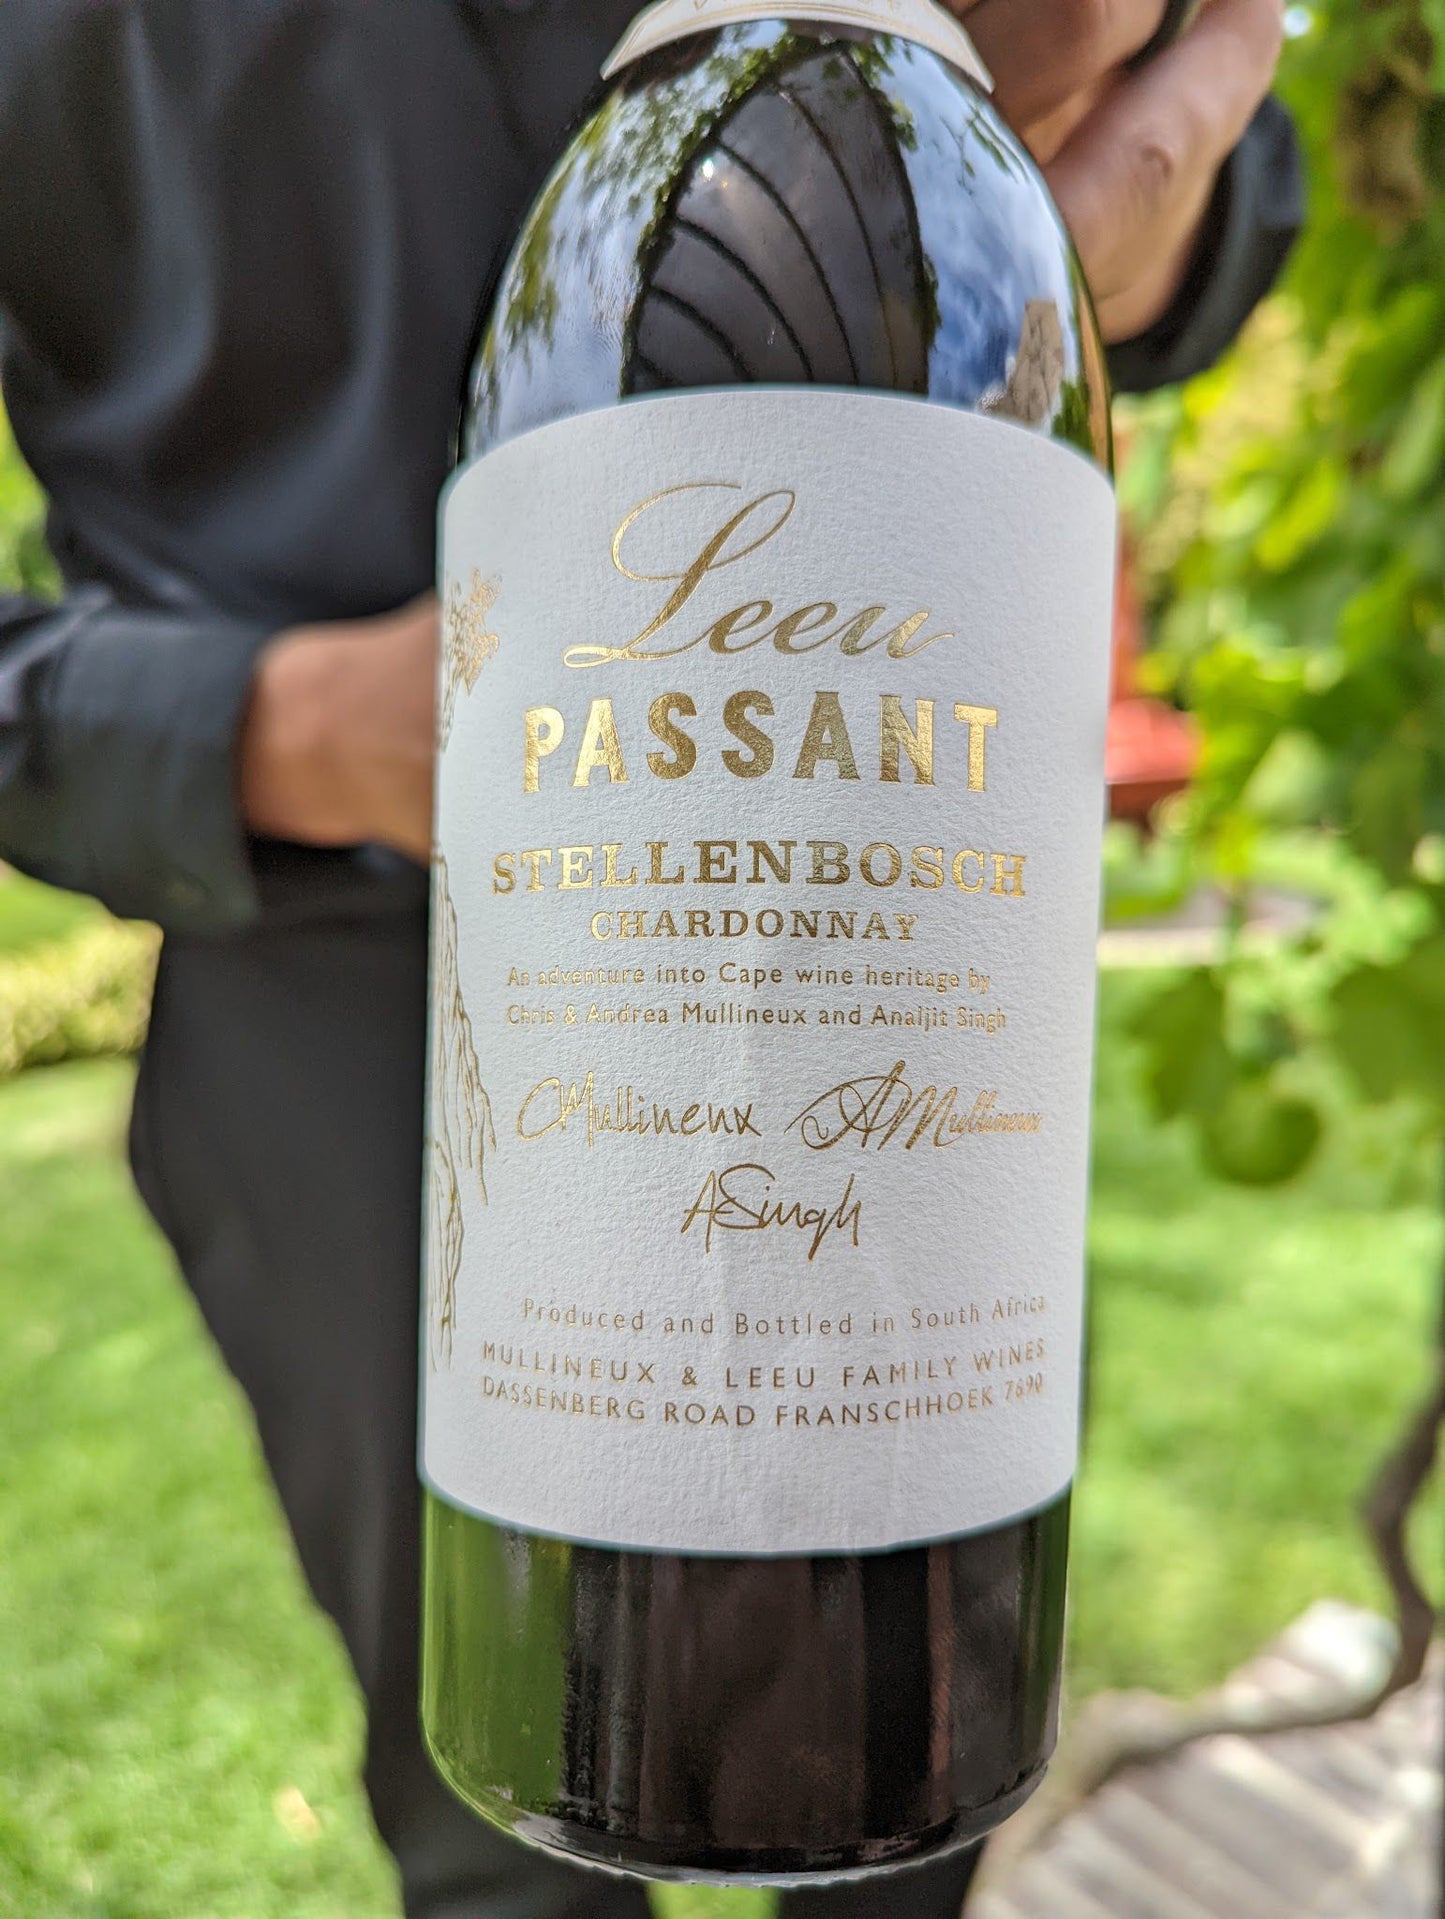  Leeu Passant Winery